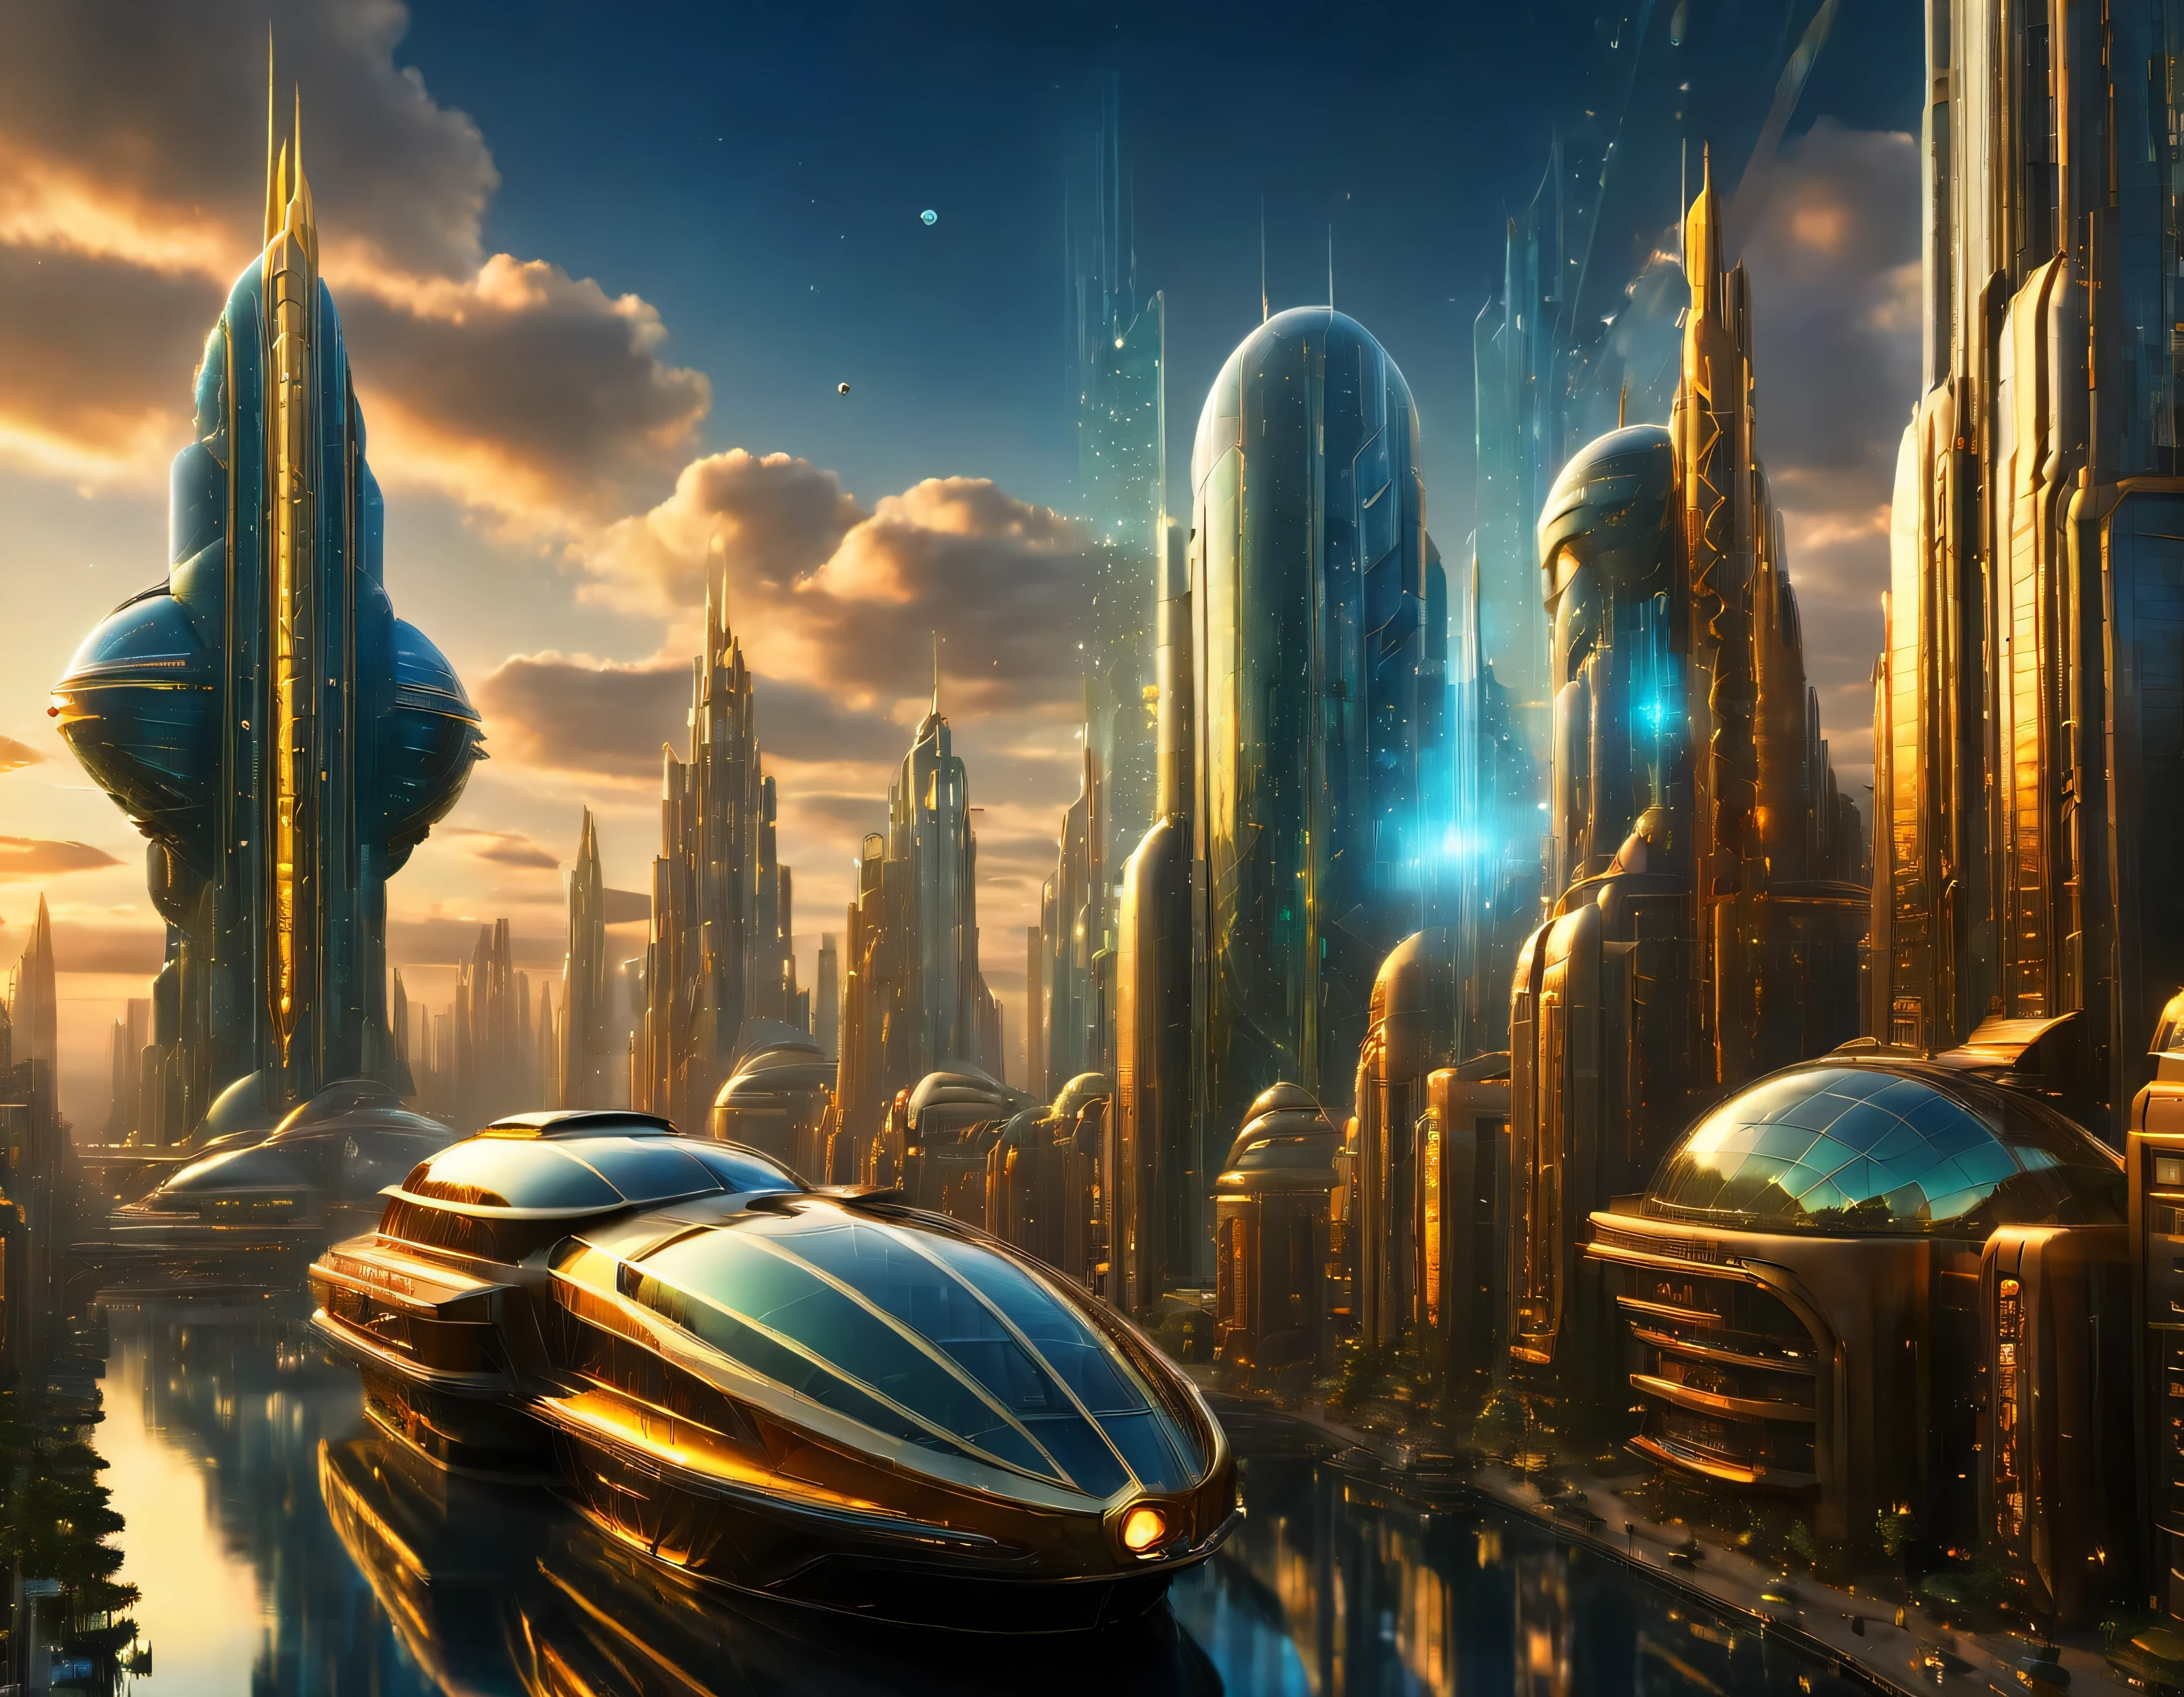 (Beleuchtung zur goldenen Stunde), Megacity, Megalopolis einer imaginären Welt der Science-Fiction , ähnlich einem futuristischen Disneyland, und maximale Fantasie, mit riesigen Gebäuden und ovalen und zwölfeckigen Wolkenkratzern, die aus Metall und Glas gruppiert sind und in denen Diamanten und farbenfrohe Leuchtreklamen vorherrschen.. Gut definiertes 8K-Bild, (komplizierte Details der Maschine), mit vielen Gebäuden zusammen.(Meisterwerk von höchster Qualität).(fotorealistisches Bild), absolute Schärfe bis in den Hintergrund